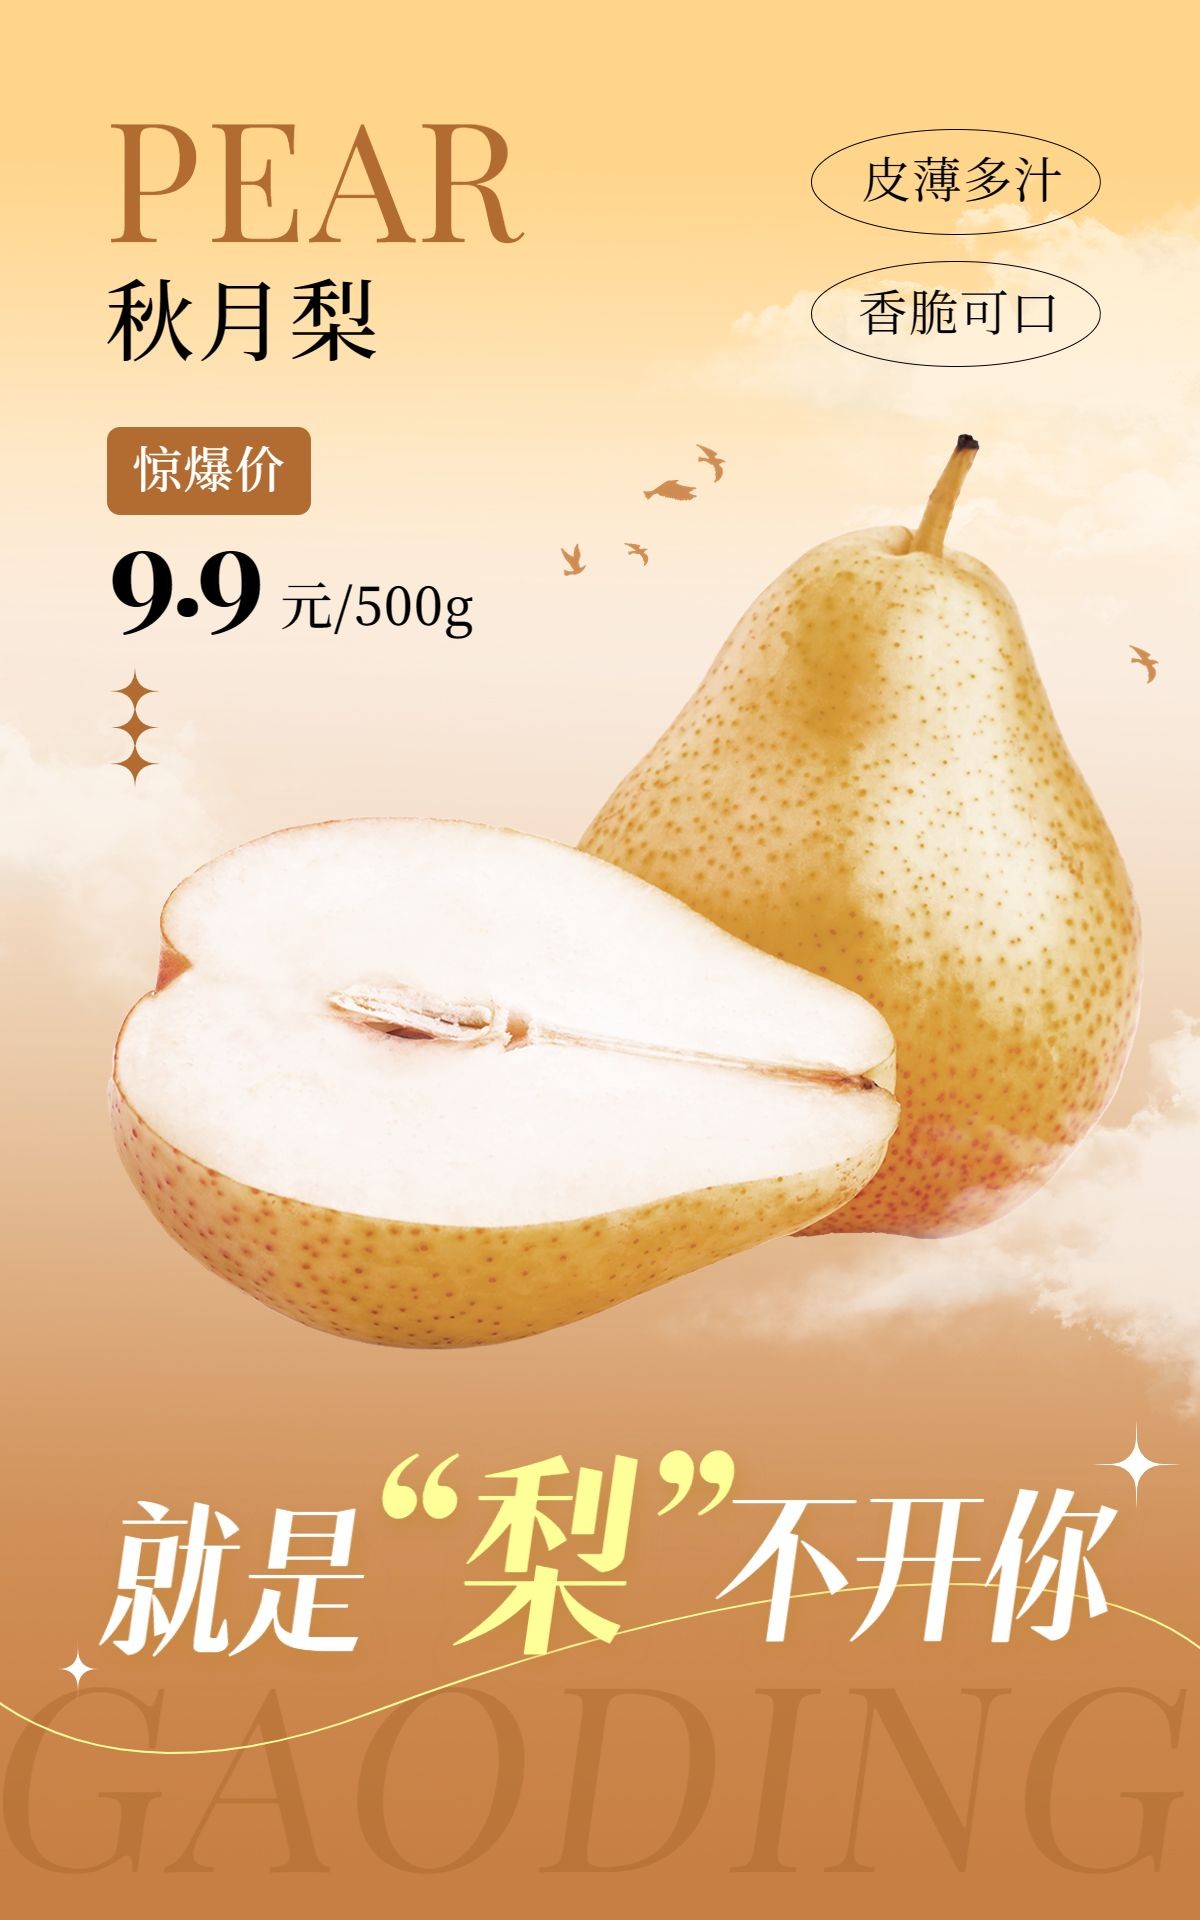 秋系列秋季生鲜水果香梨电商竖版海报预览效果